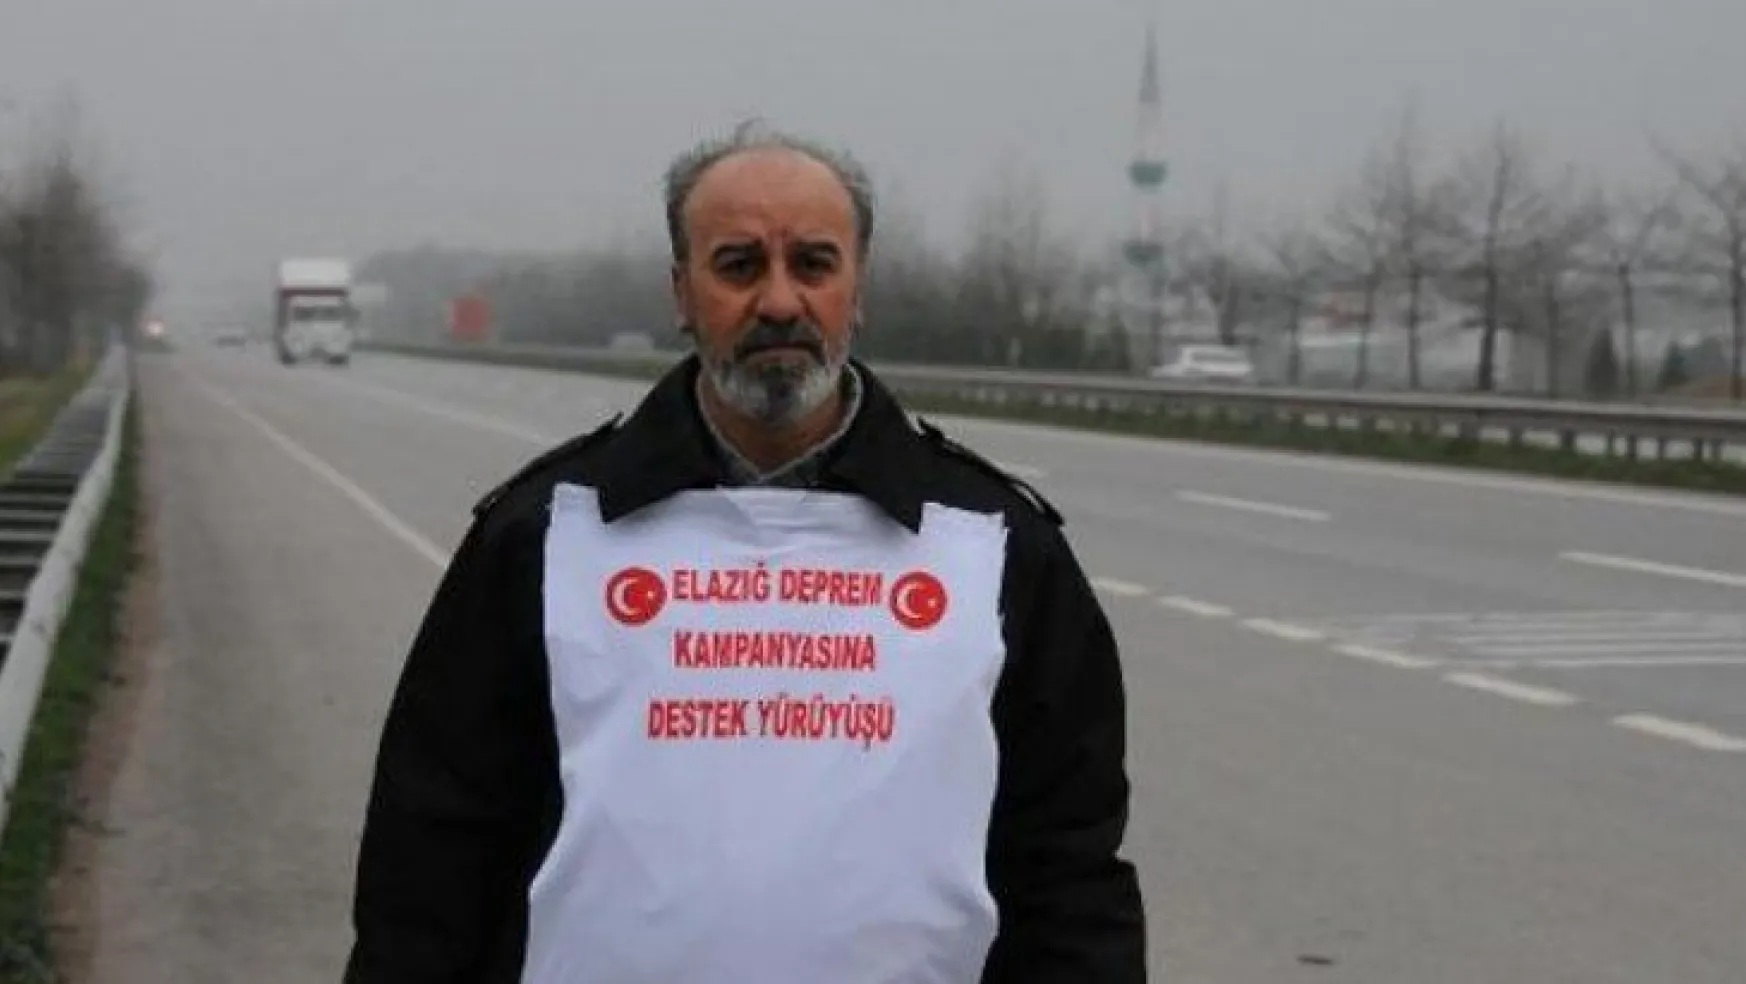 Elazığ'daki duyarlılığa teşekkür etmek için Ankara'ya yürüyor